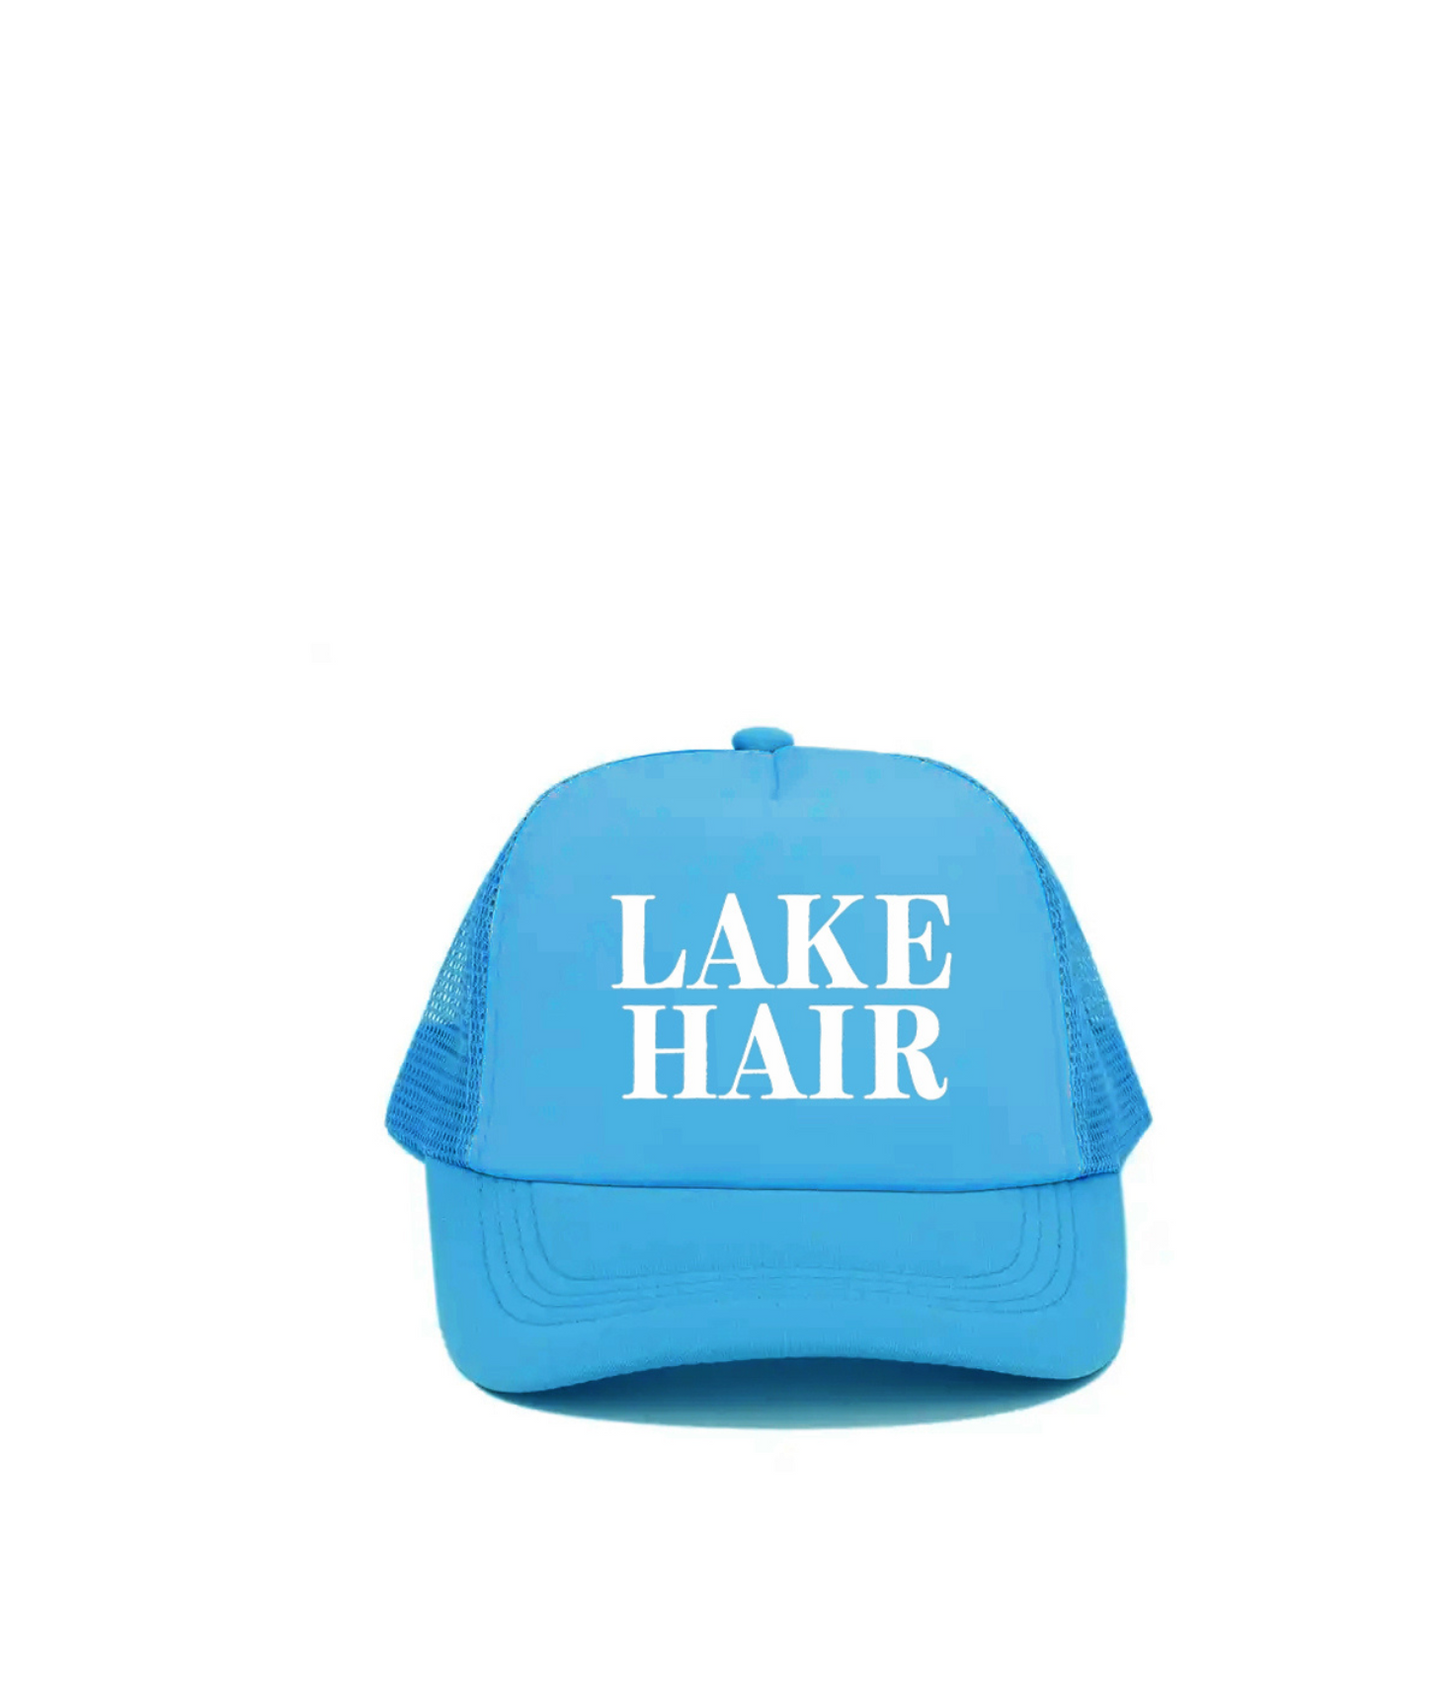 Lake Hair Trucker Hat